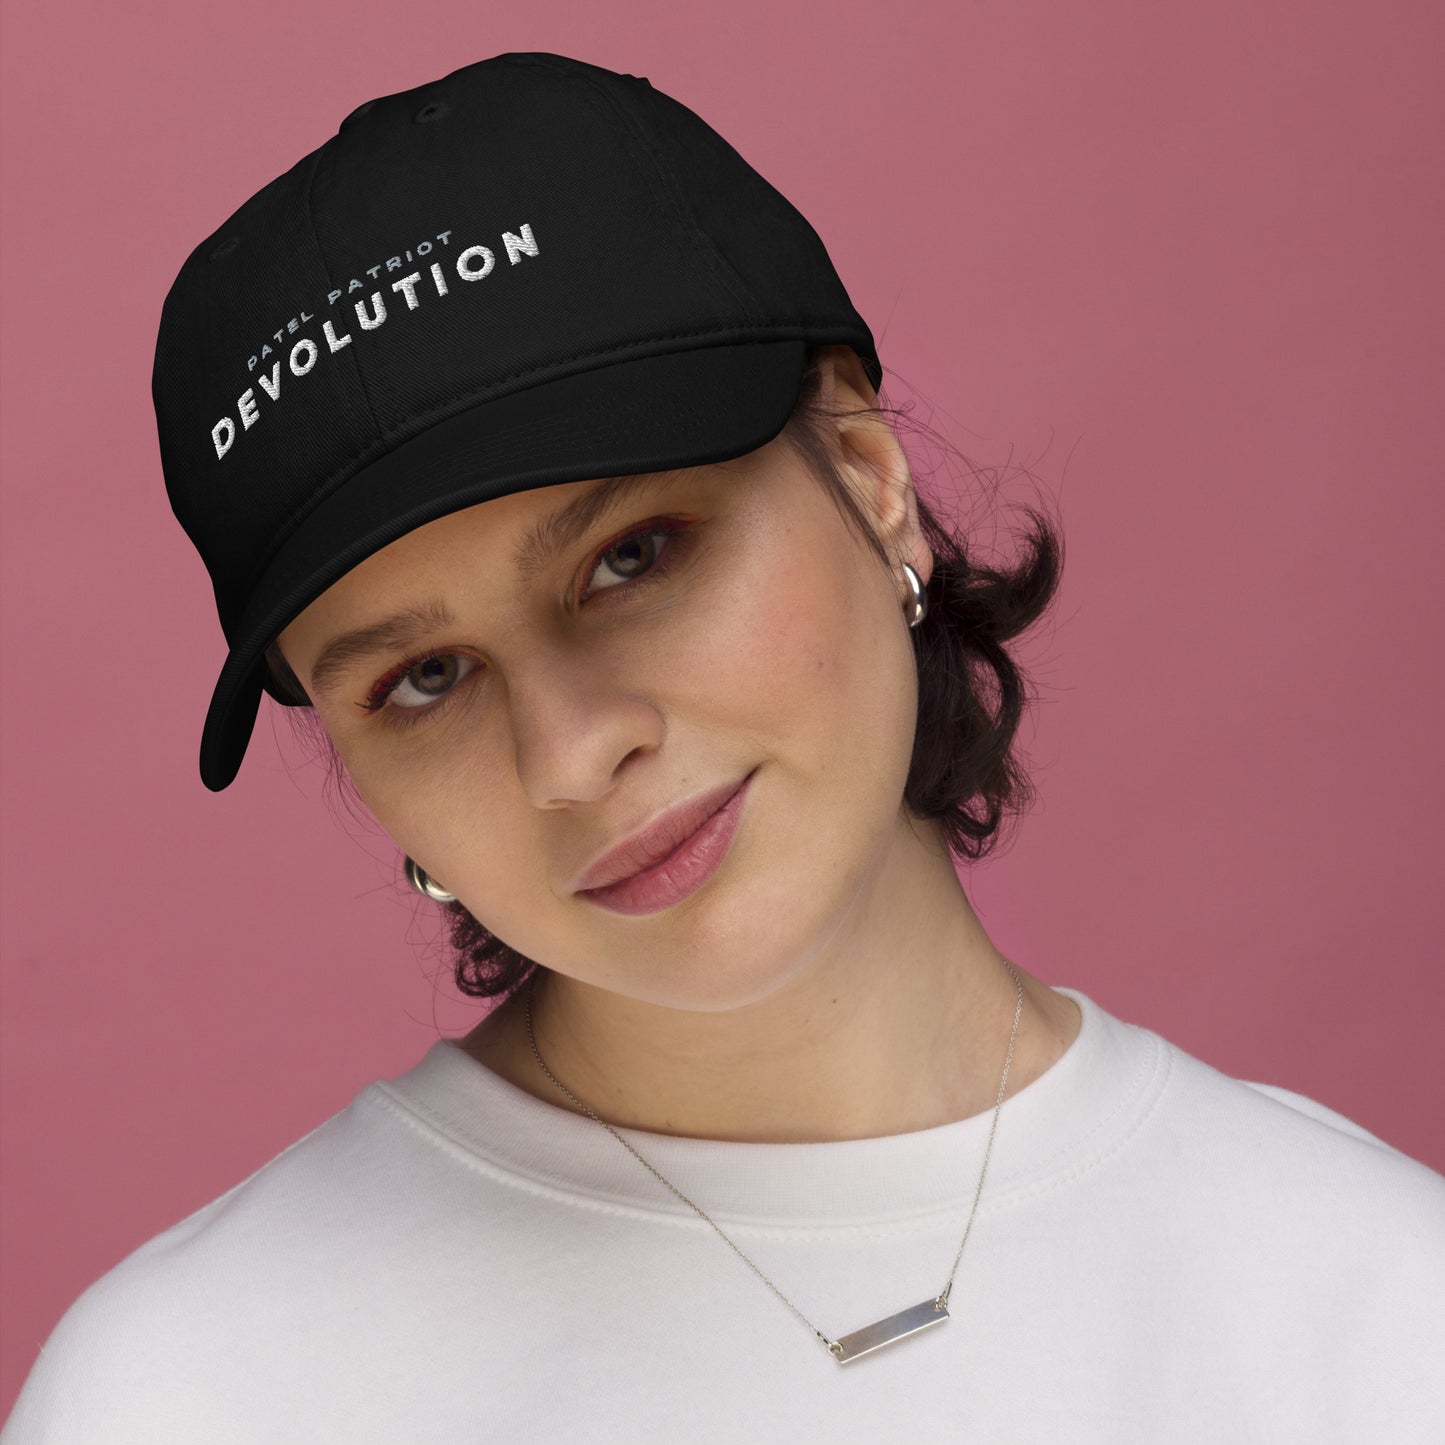 Devolution Organic dad hat (white logo)